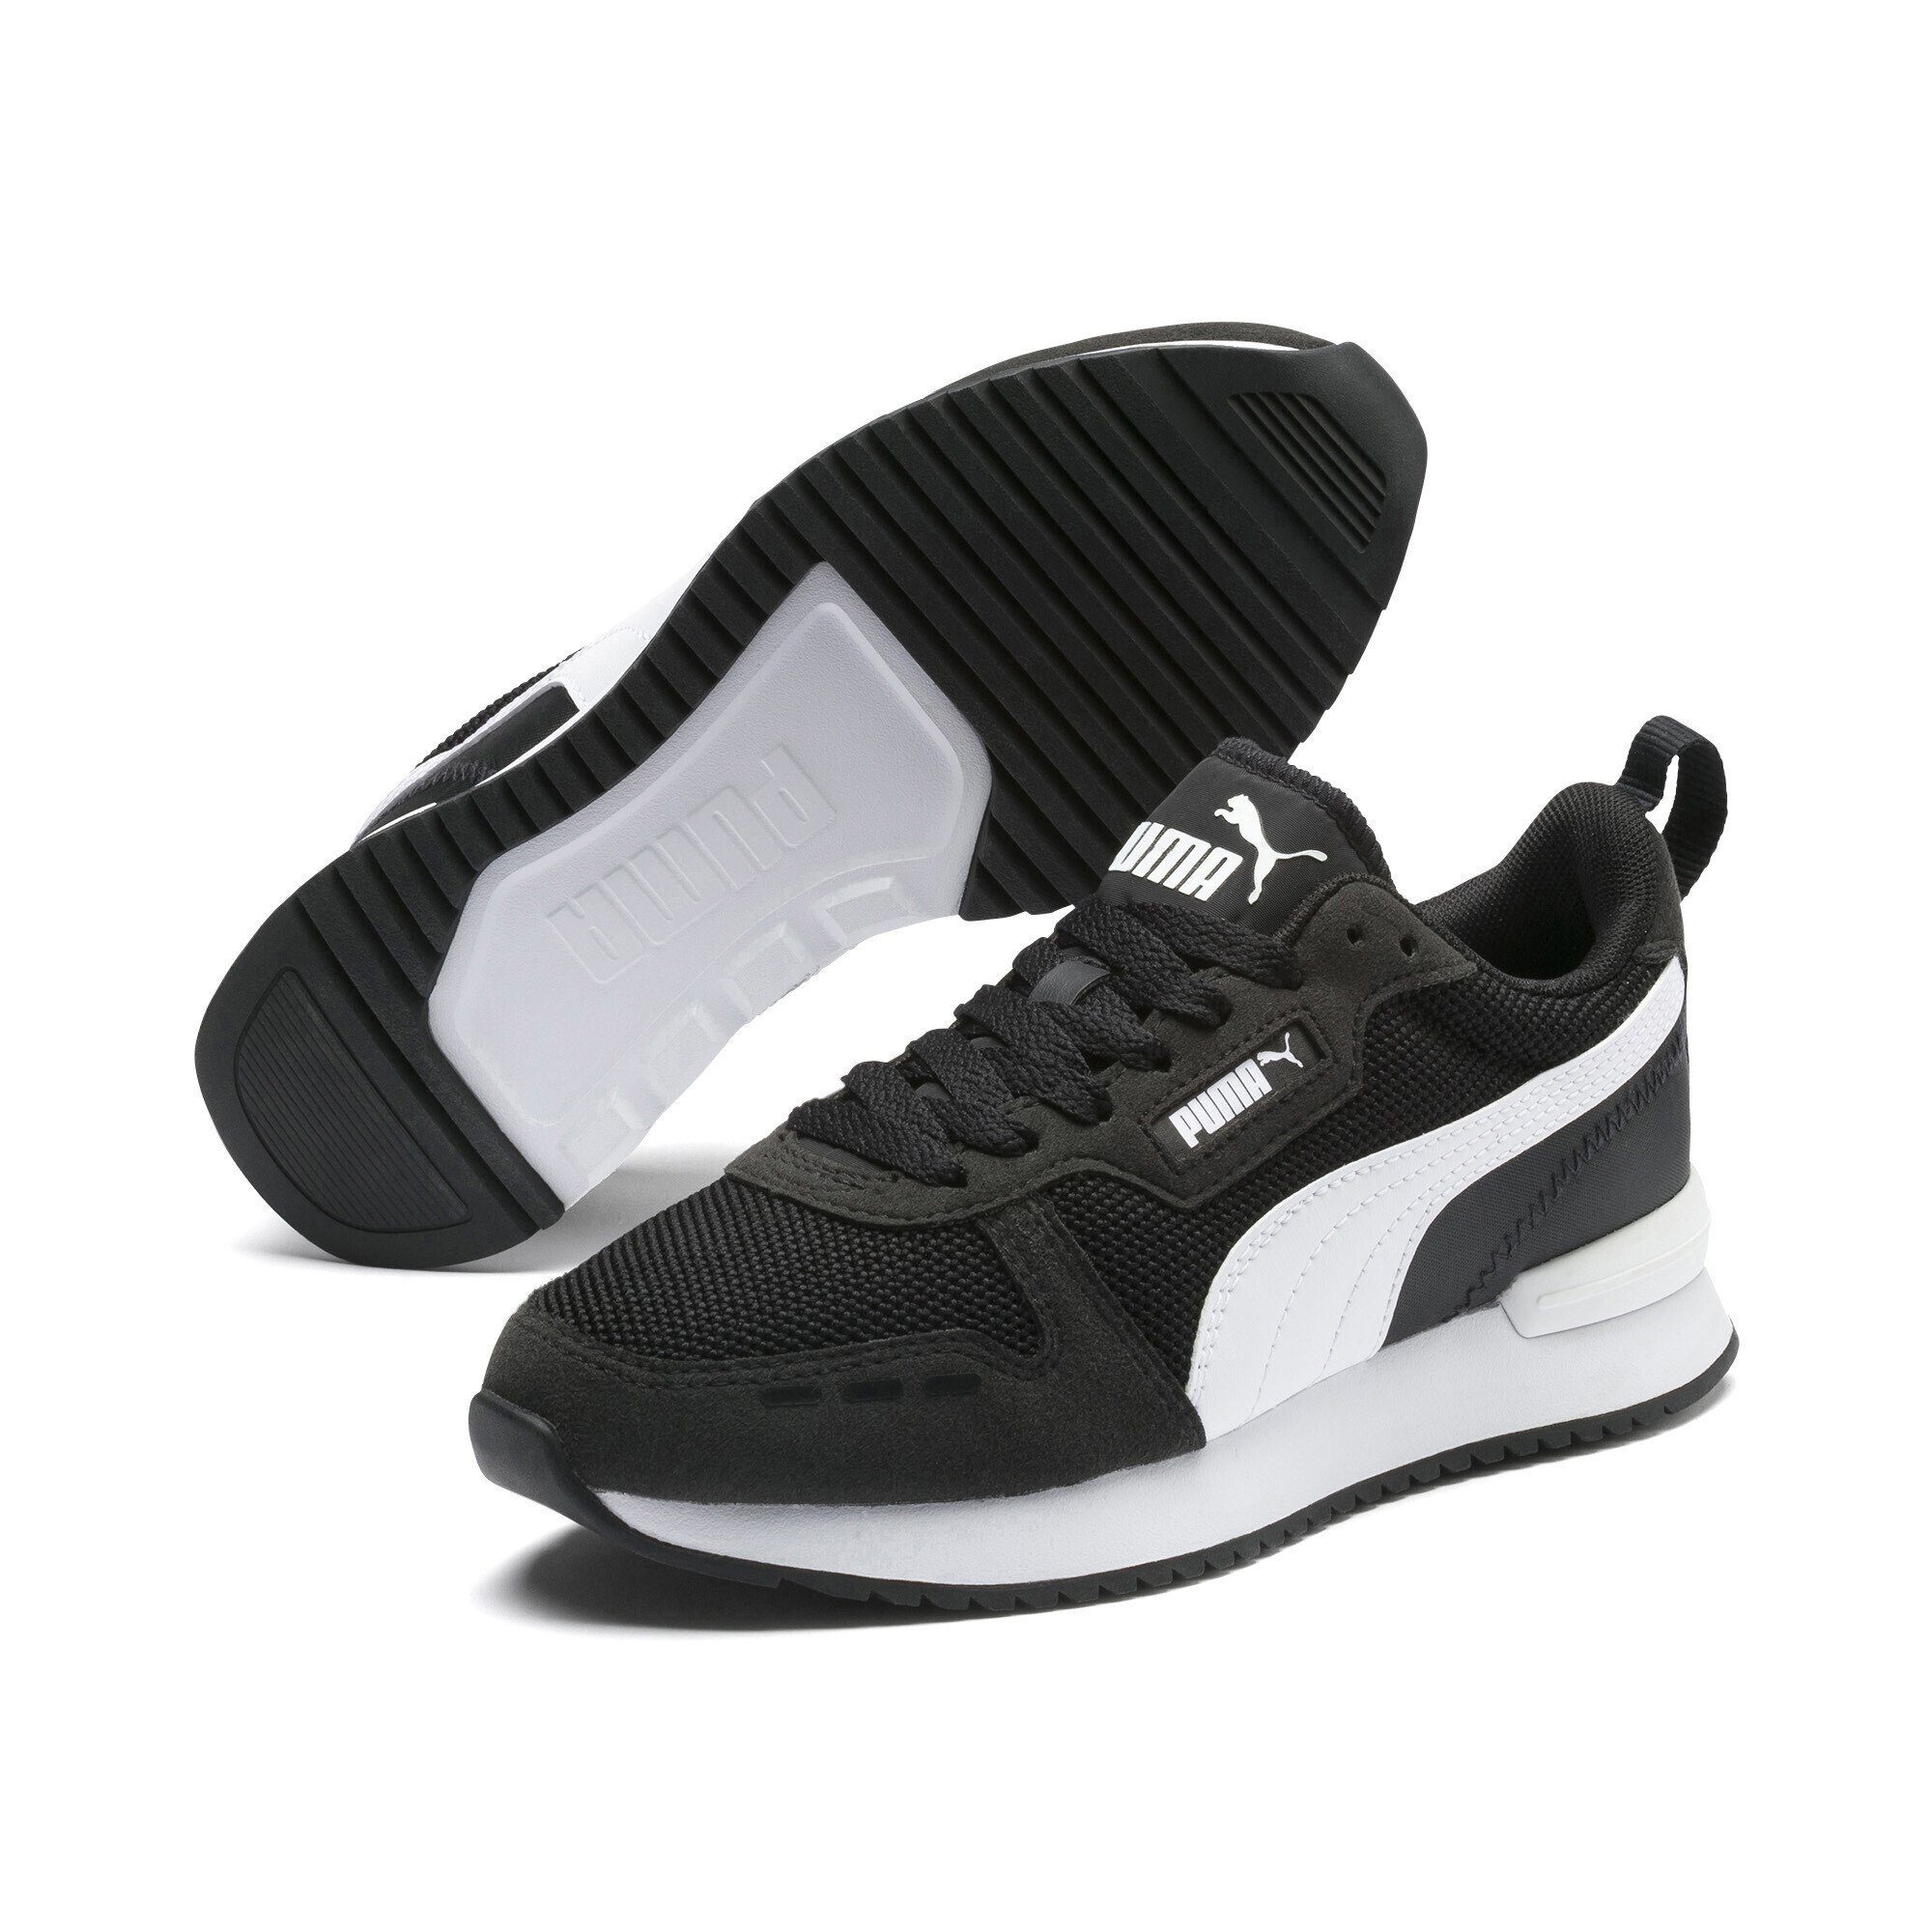 [Nur Sonderverkauf verfügbar] PUMA R78 Sneakers Jugendliche Laufschuh Black White